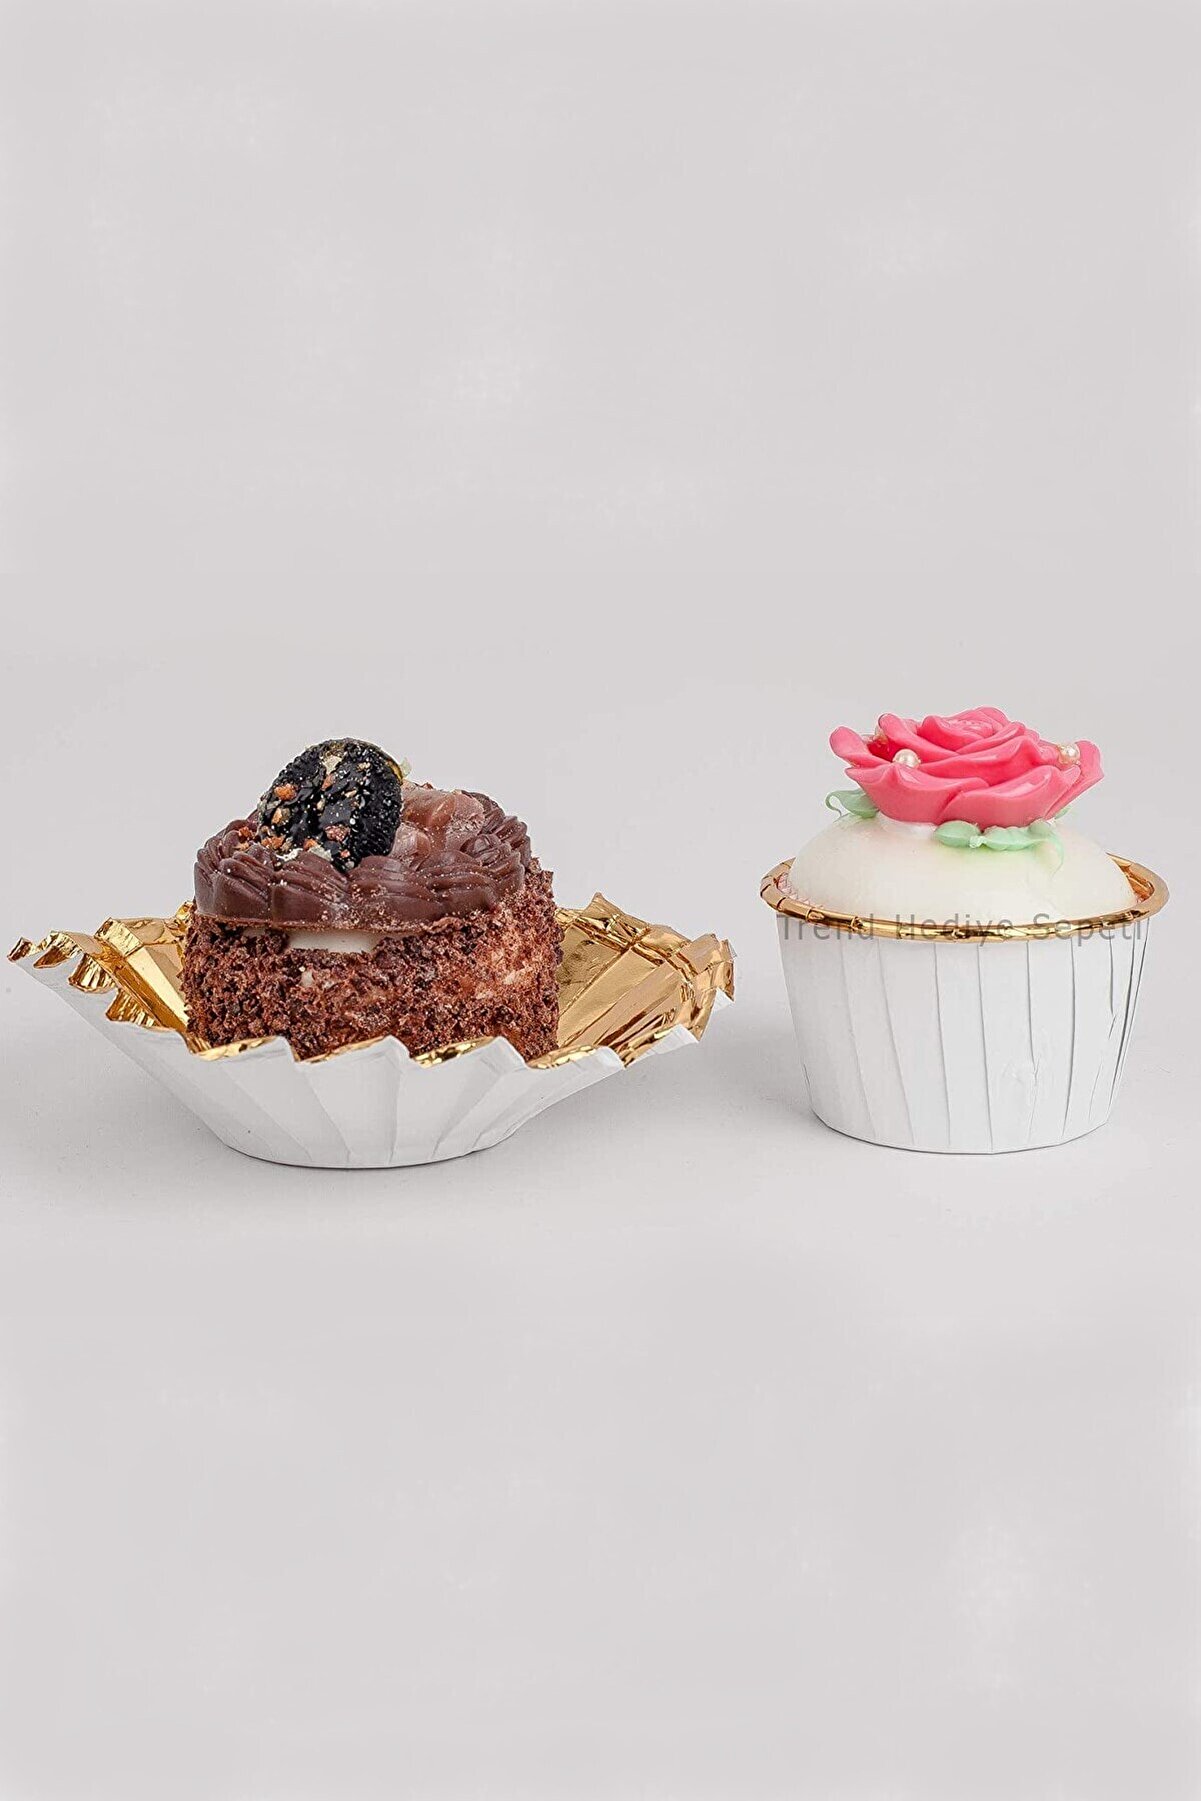 Trend Hediye Sepeti Beyaz Gold Muffin Kek Kapsülü Cupcake Kalıbı 25'li